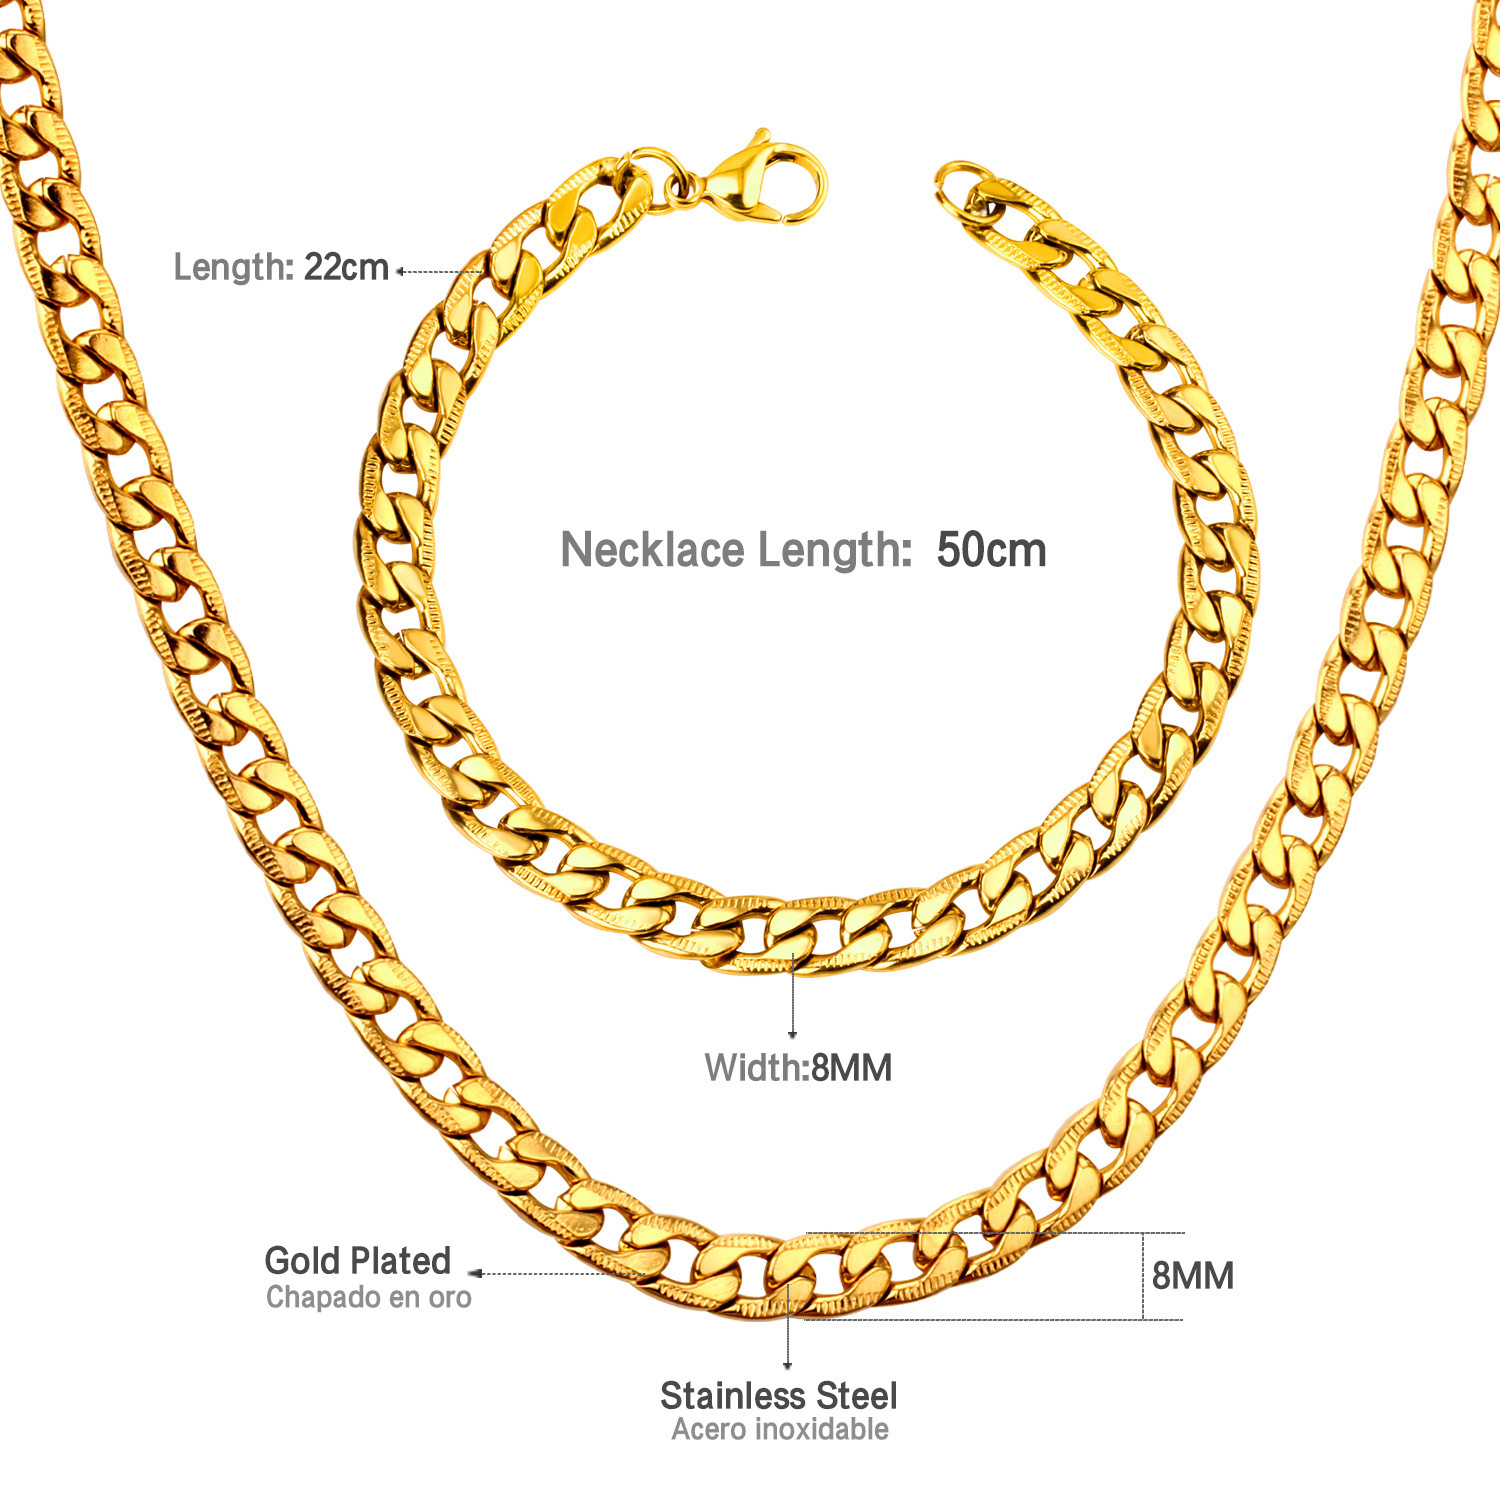 4:Gold Necklace 50cm